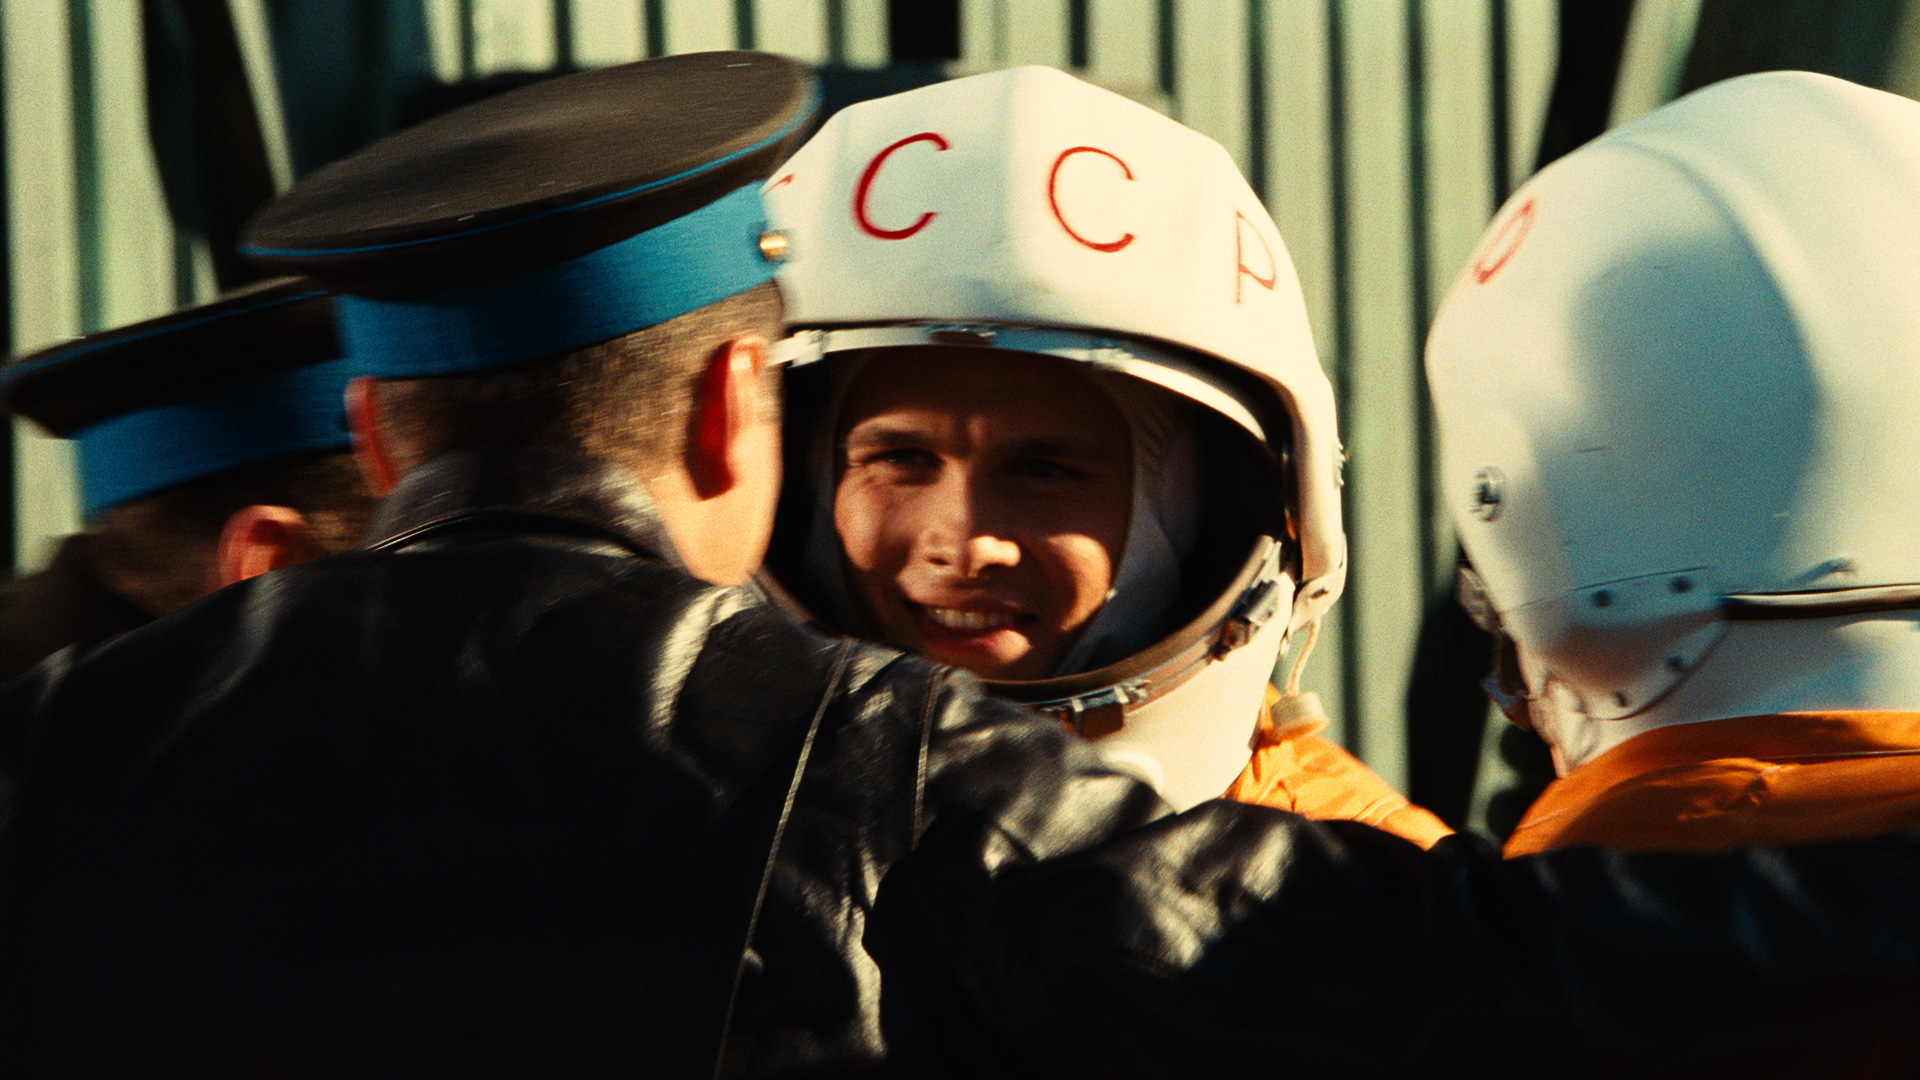 Гагарин первый в космосе россия 2013 6. Гагарин первый в космосе 2013.